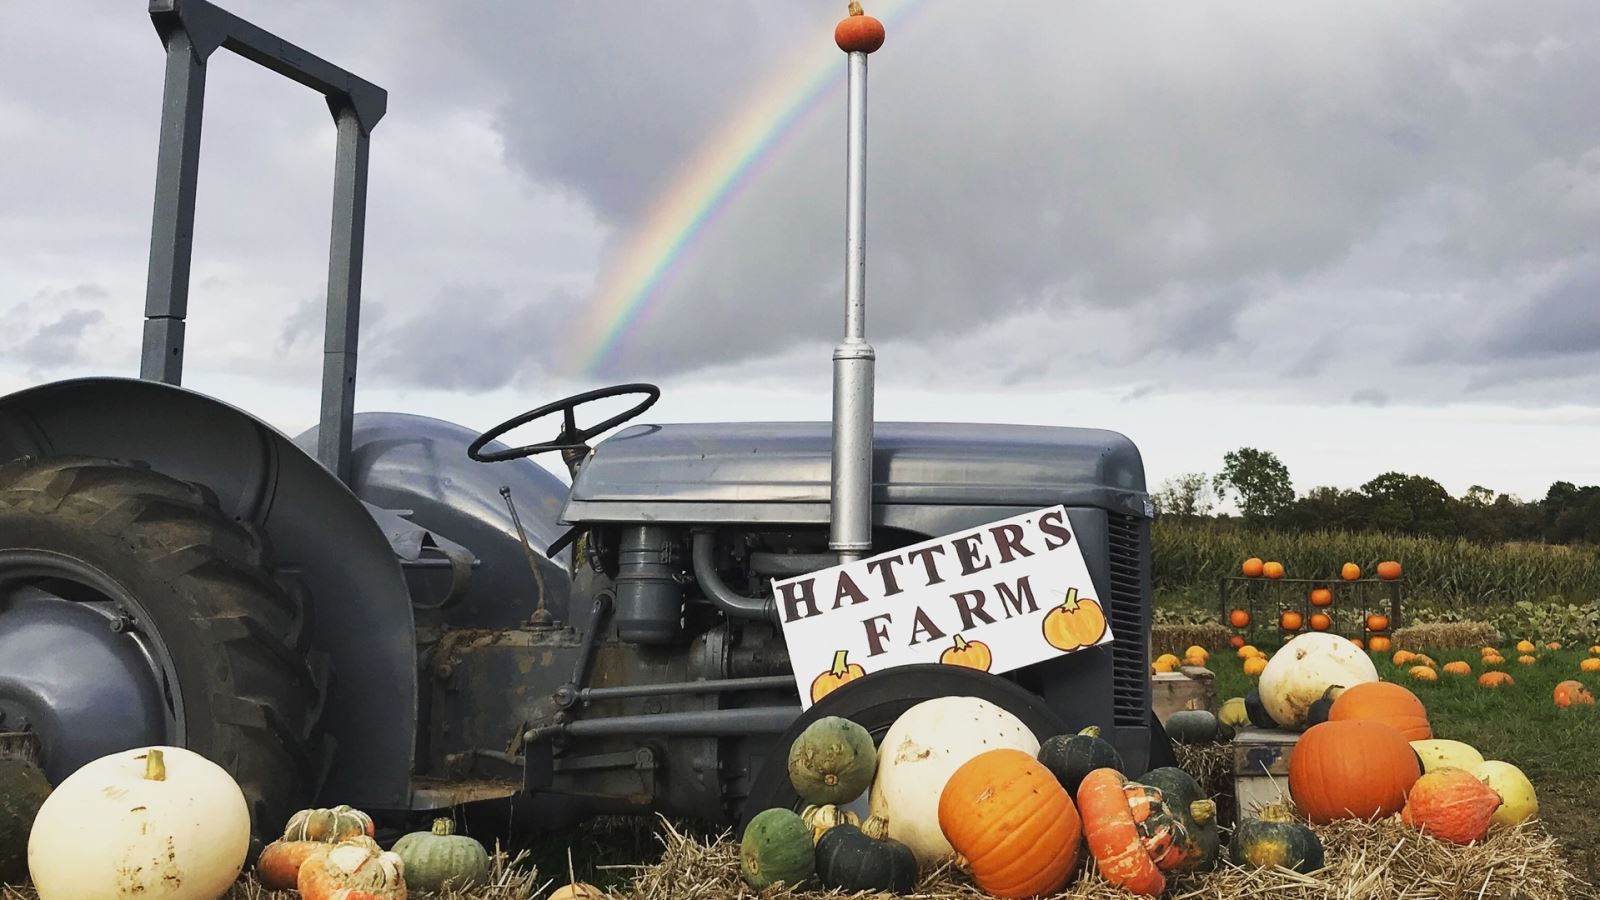 Hatters Farm